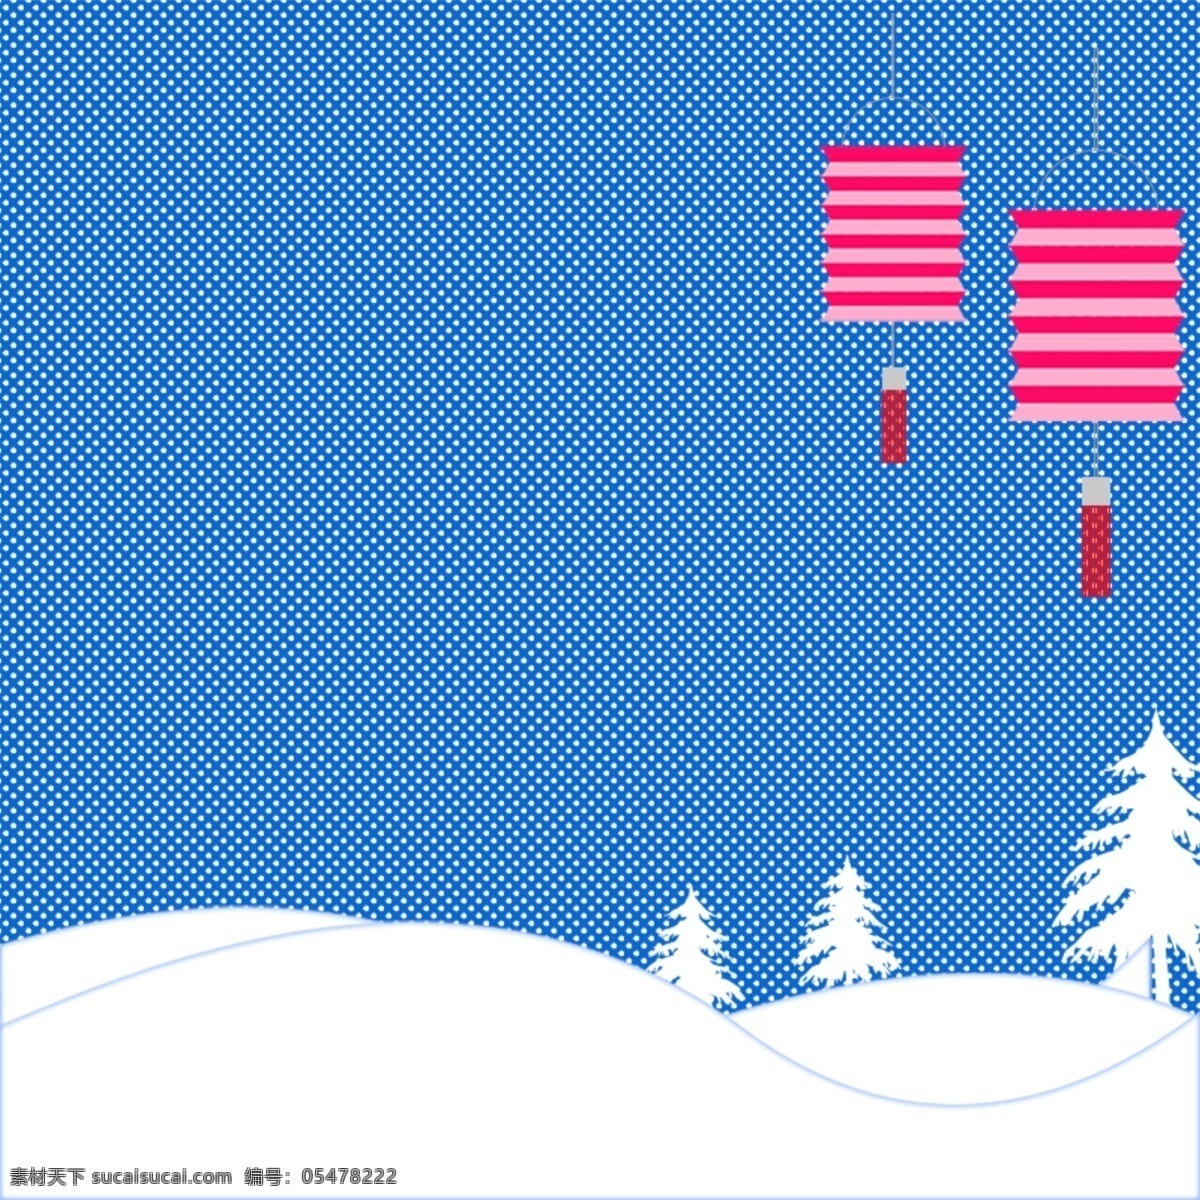 冬季背景 冬季插画 冬天 广告设计模板 源文件 冬季 氛围 模板下载 冬季氛围 写意背景 蓝色